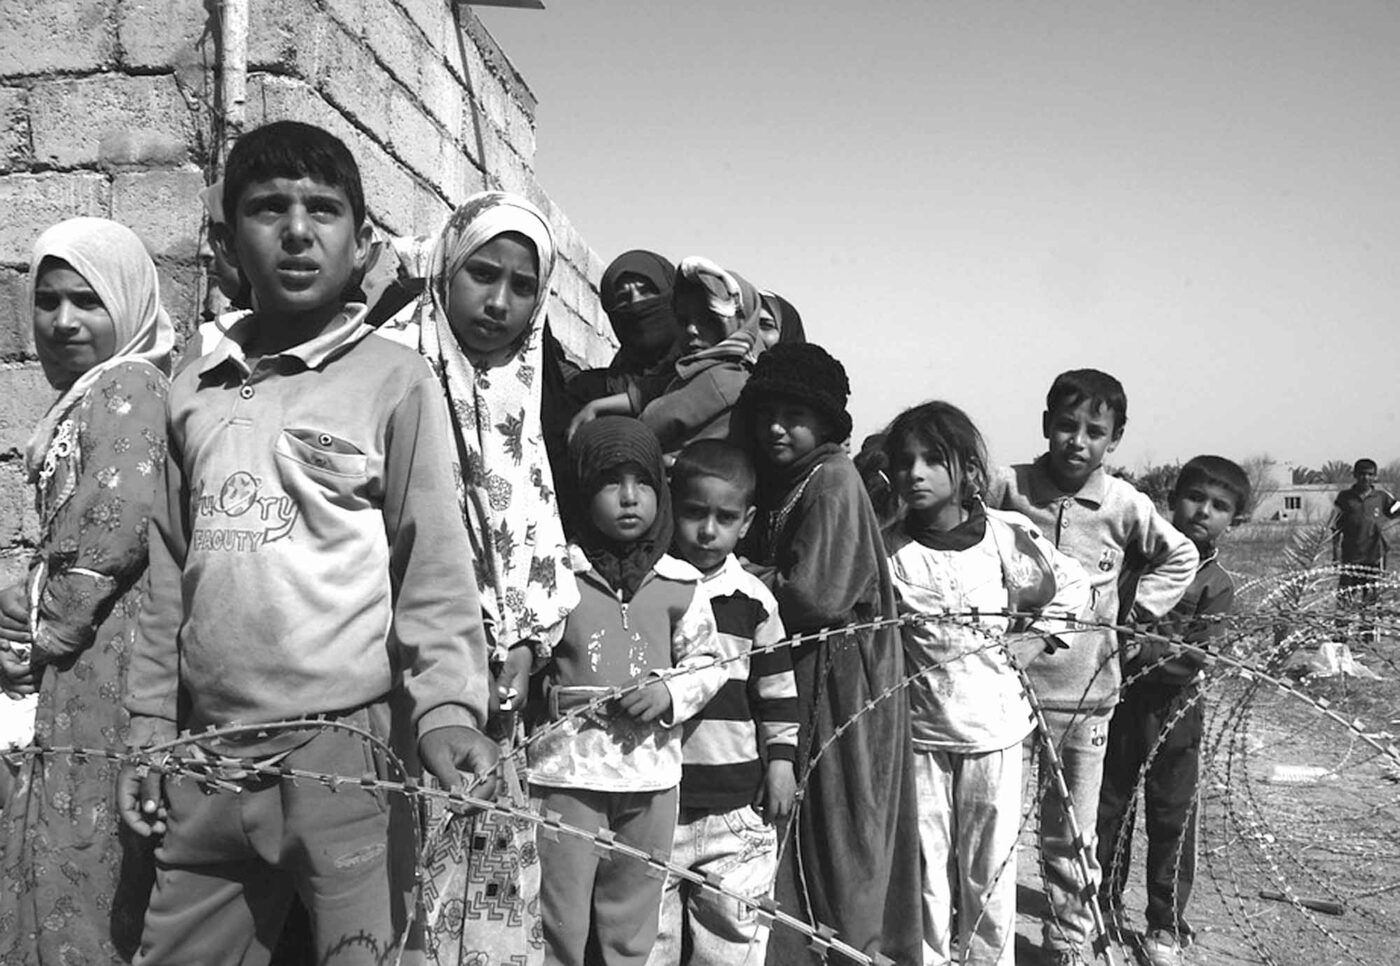 Hilfe in den Nachbarstaaten und die geregelte Aufnahme von Flüchtenden aus Afghanistan kann kein Gegensatz sein. Beides ist notwendig und machbar. Foto: Pixabay